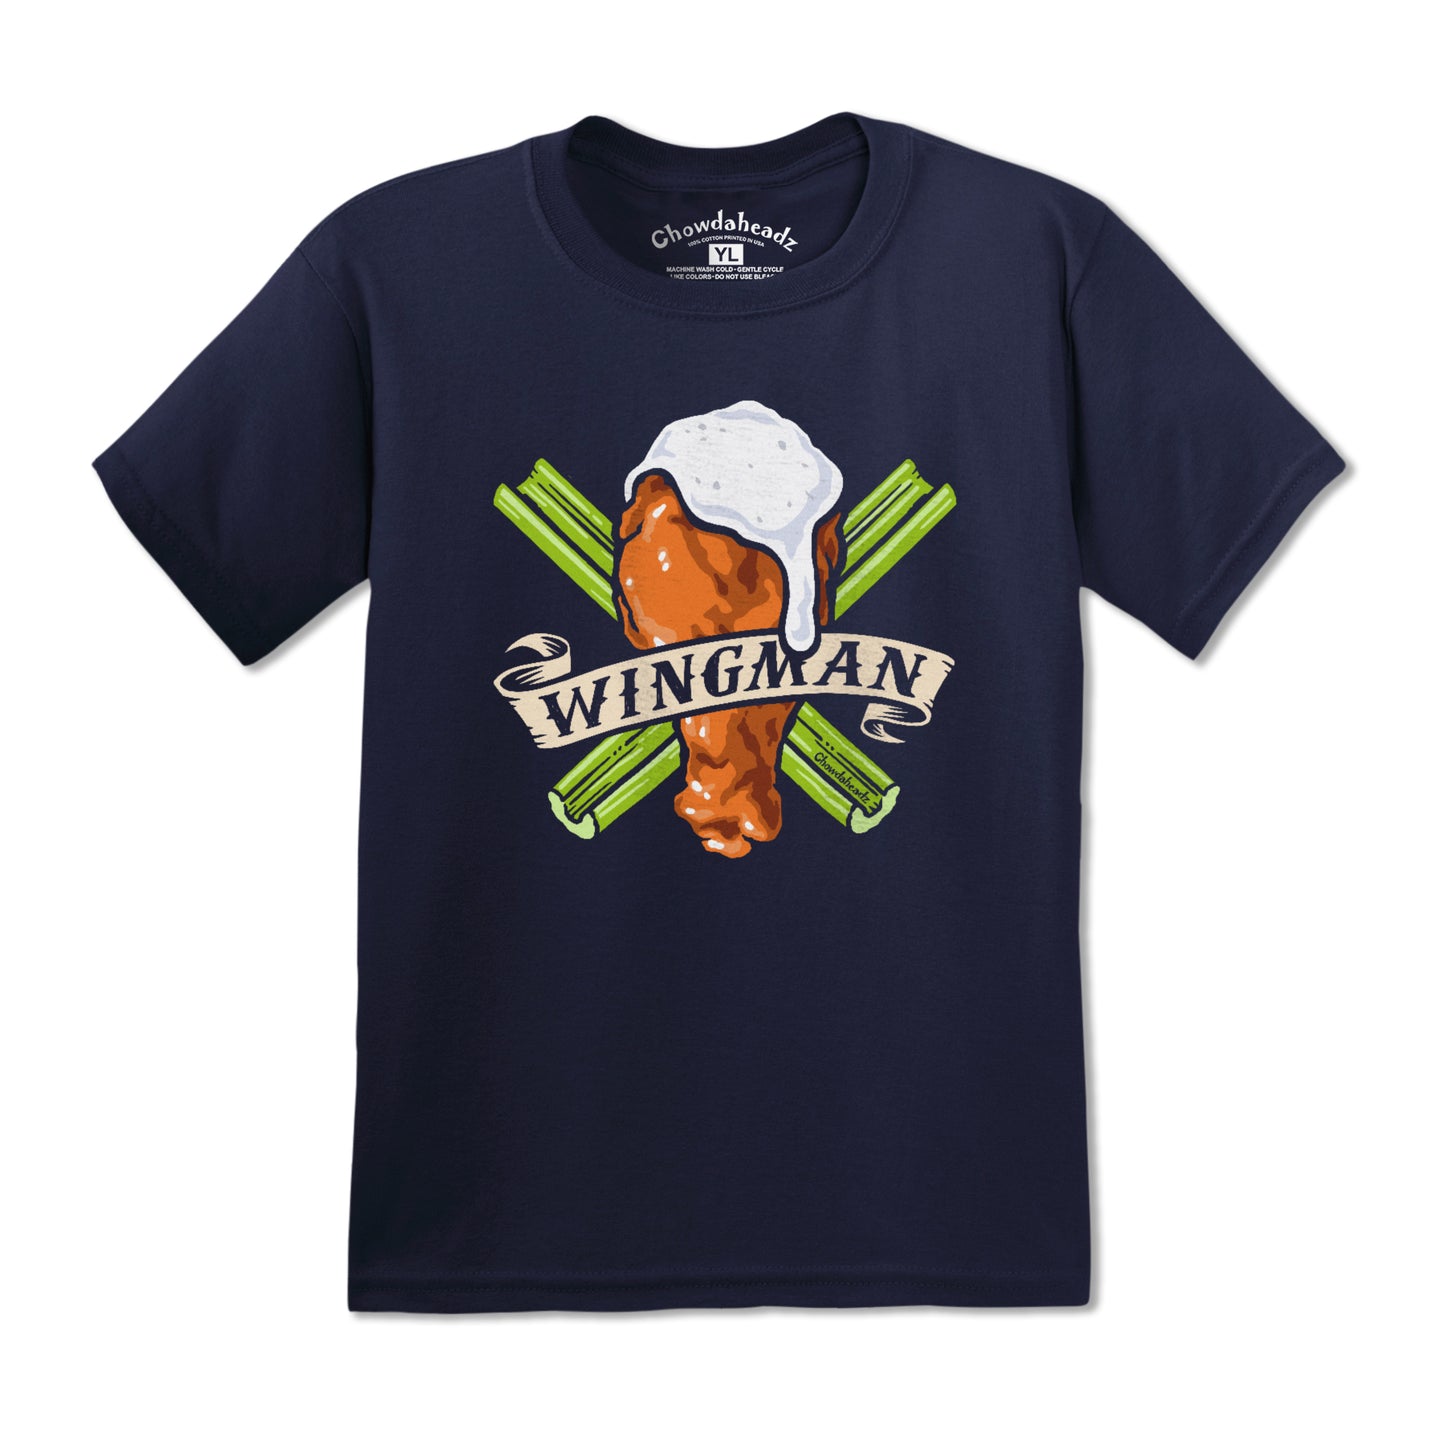 Wingman Youth T-Shirt - Chowdaheadz